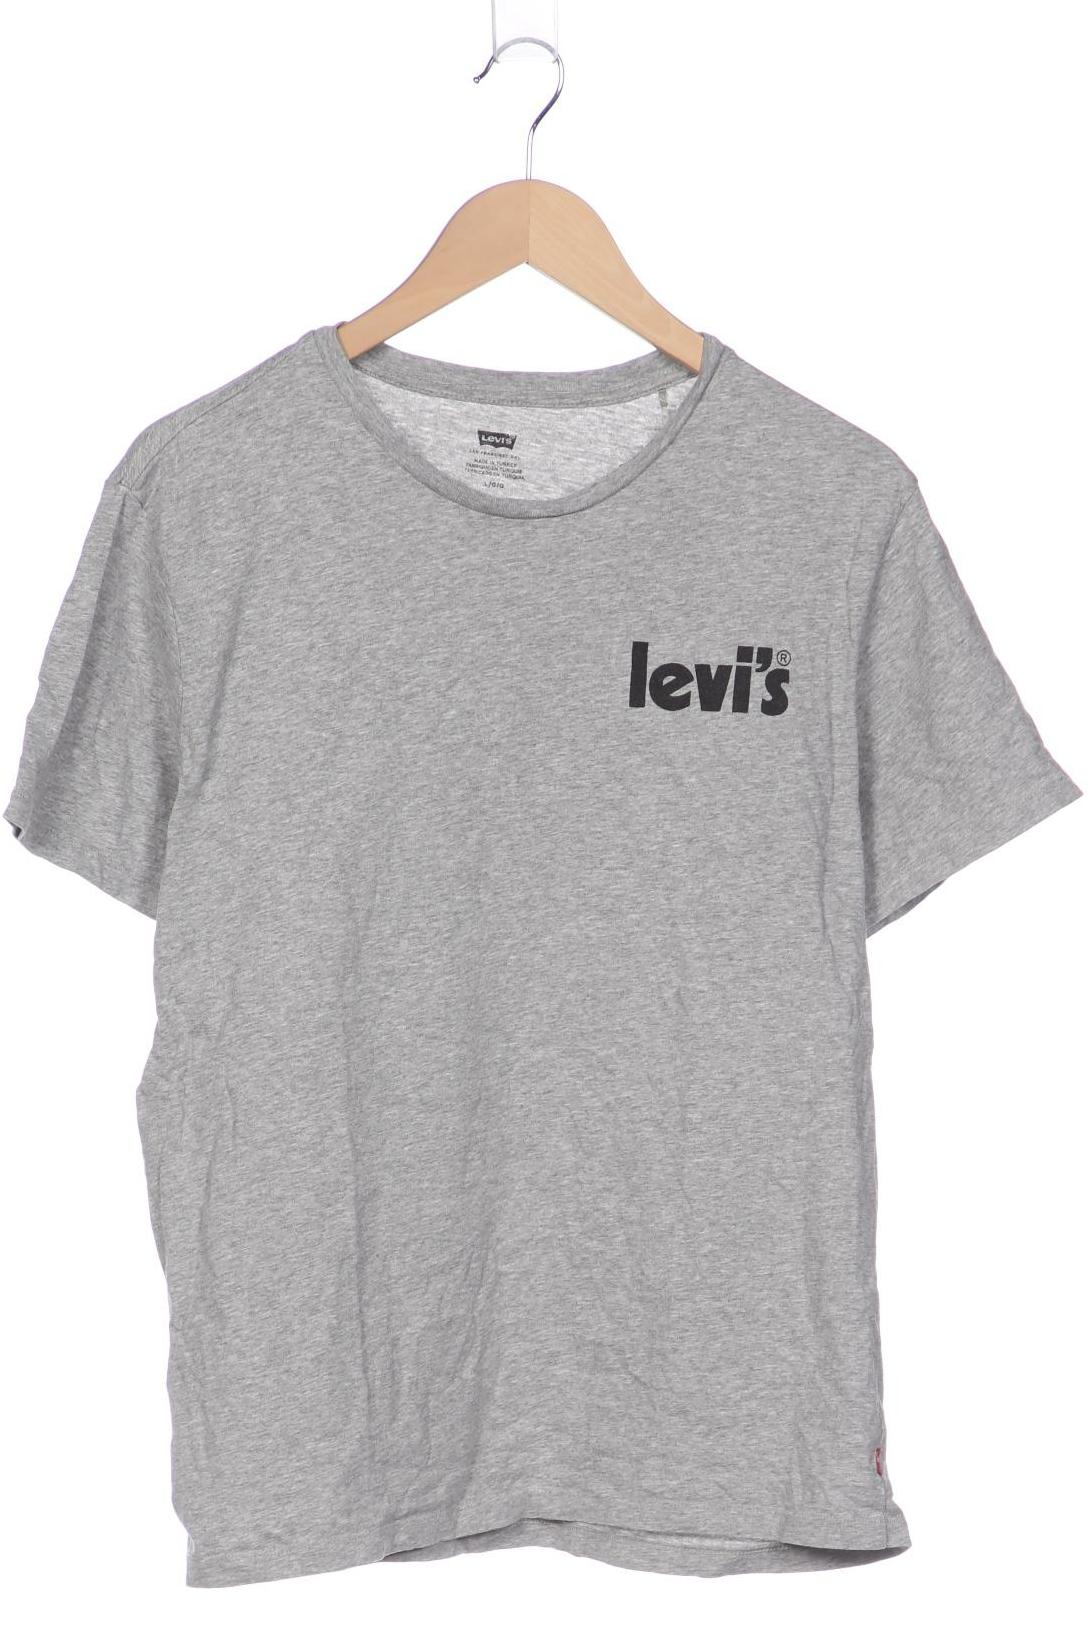 Levis Herren T-Shirt, grau, Gr. 52 von Levis